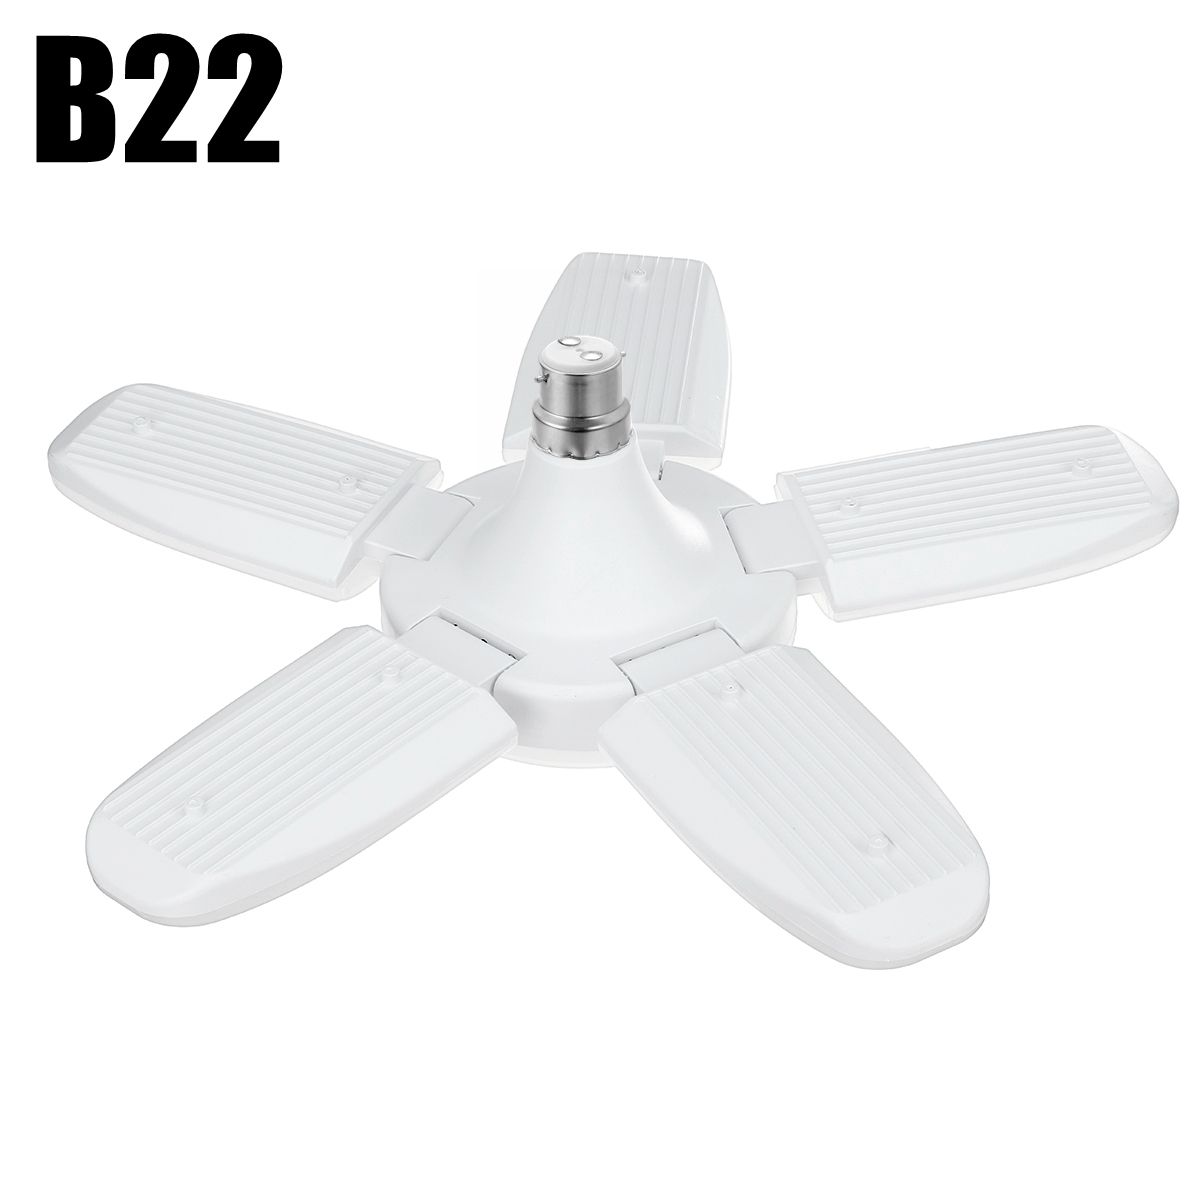 E27B22-Deformable-LED-Garage-Light-Bulb-80W-SMD2835-Ceiling-Fixture-Home-Shop-Workshop-Lamp-85-265V2-1737129